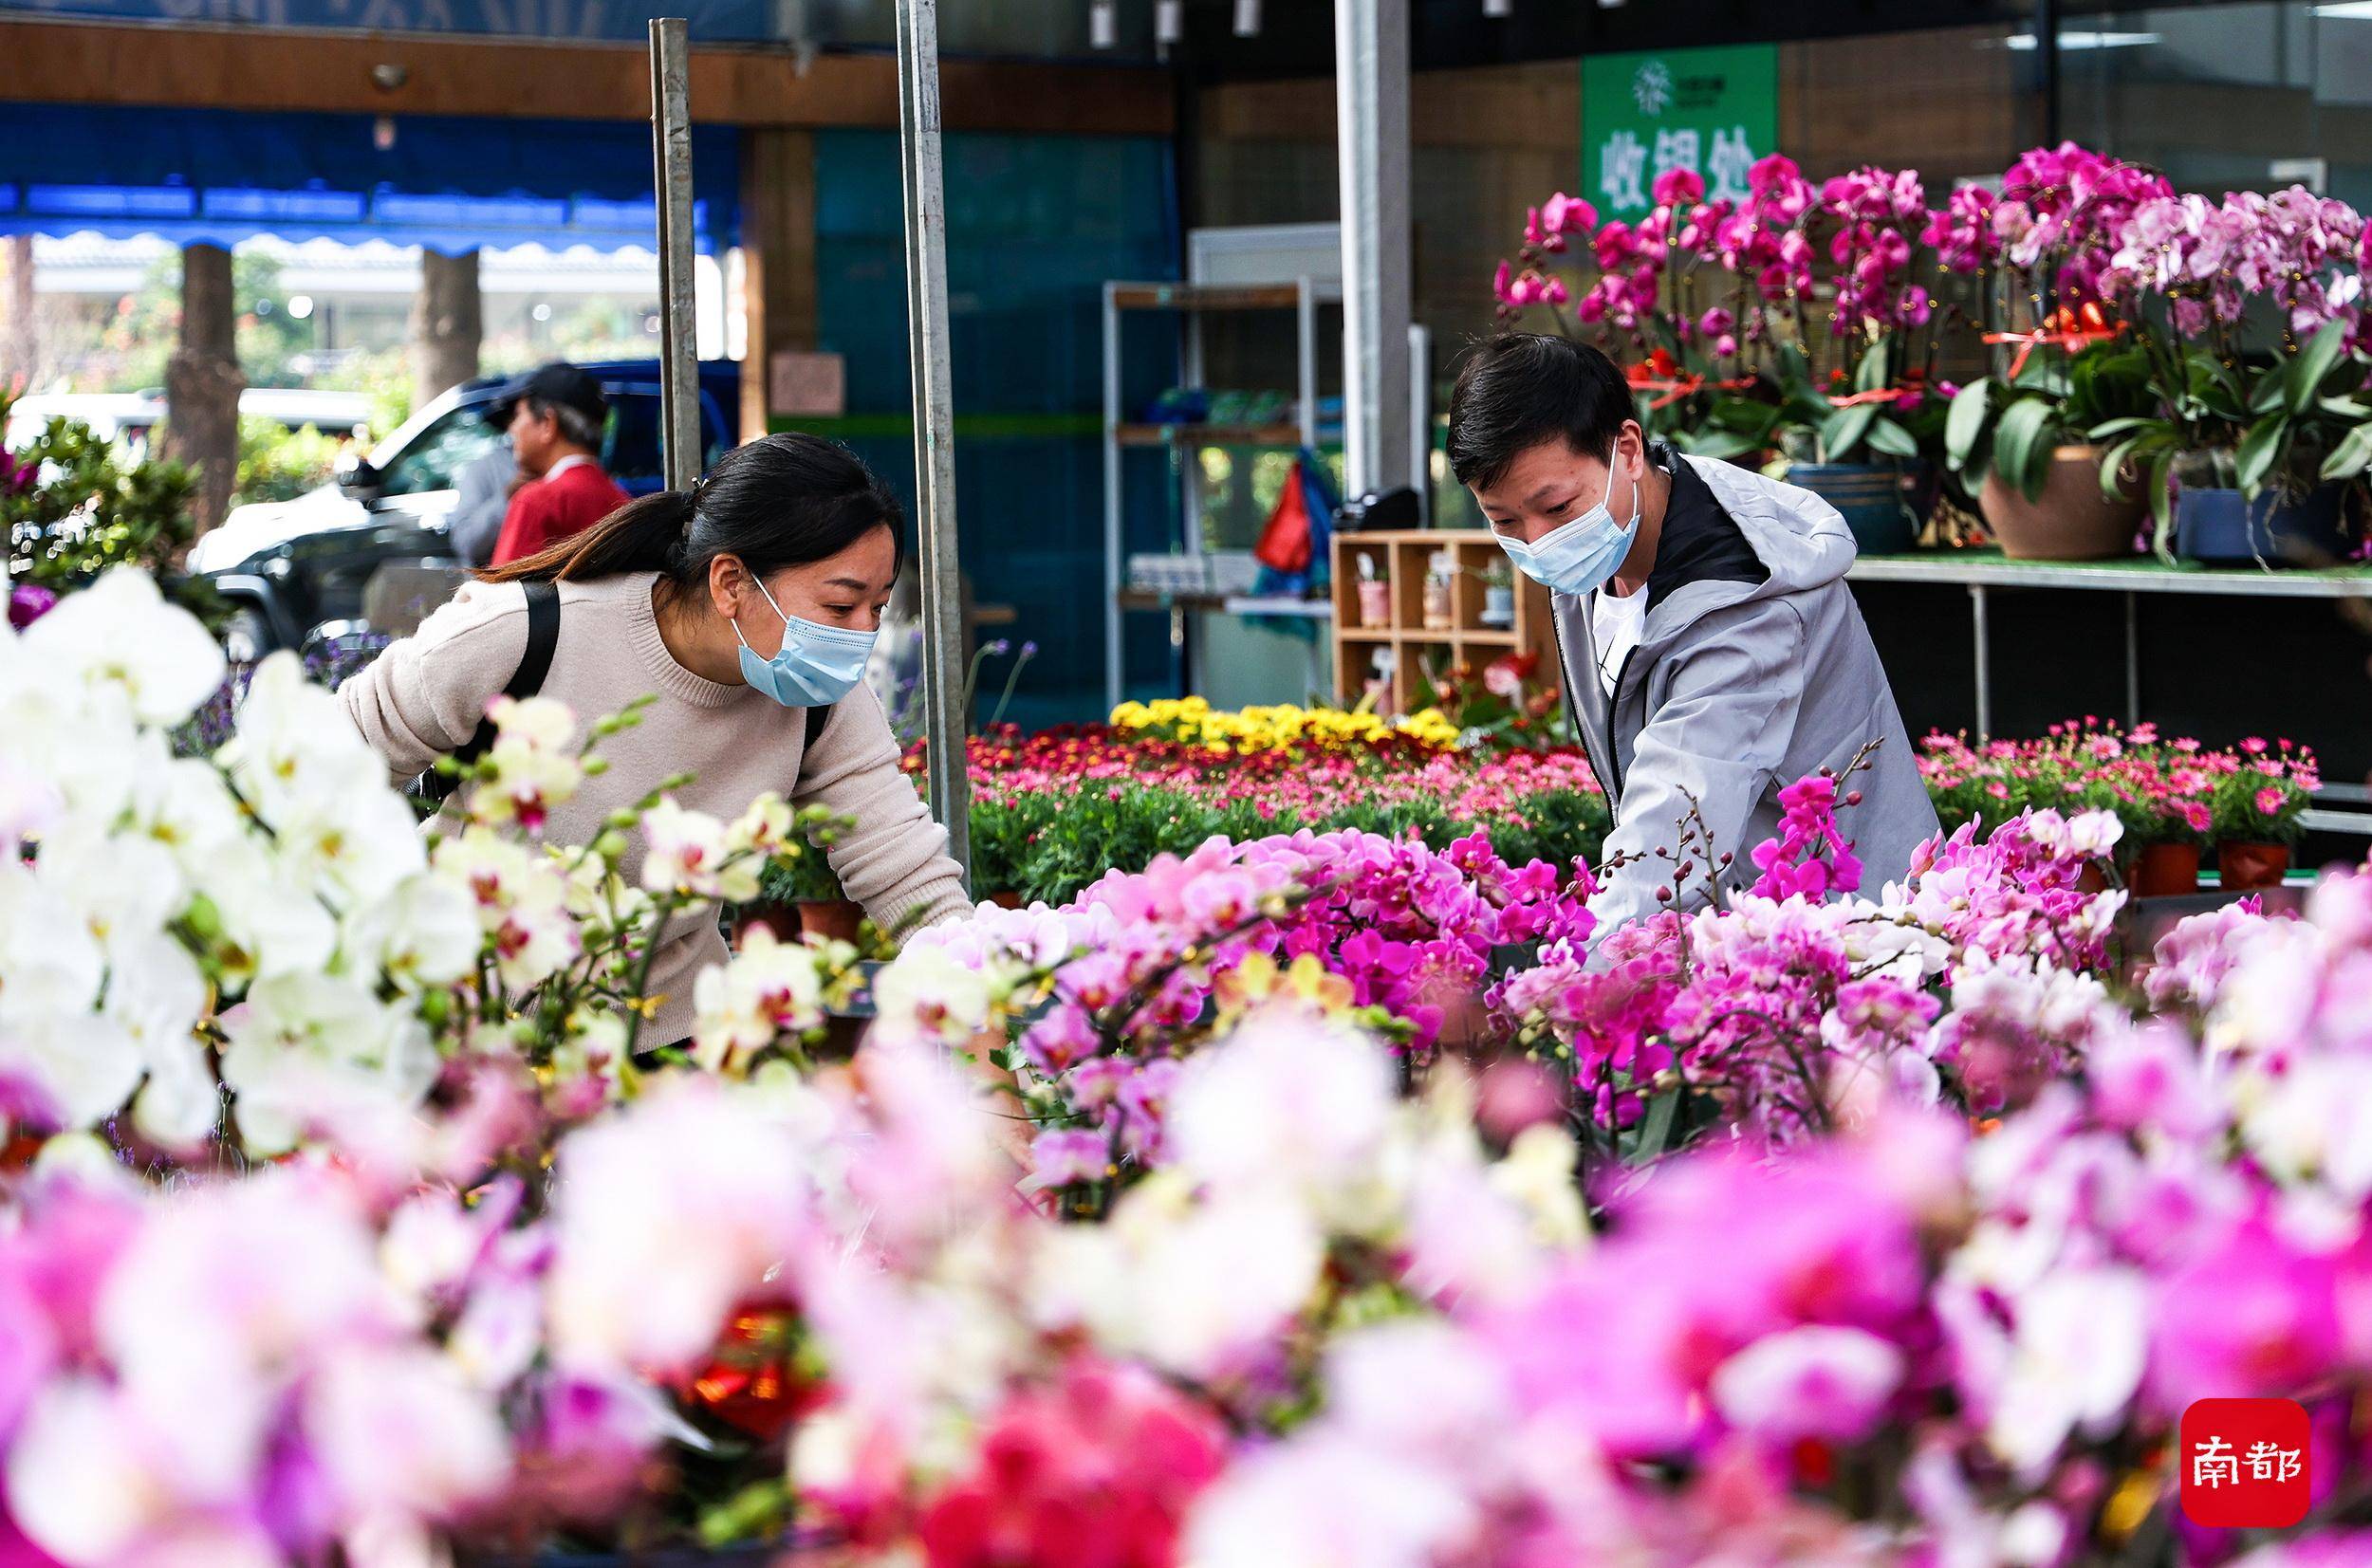 图集:快过年啦,广州多个花市热闹起来,南都拍客带你打卡